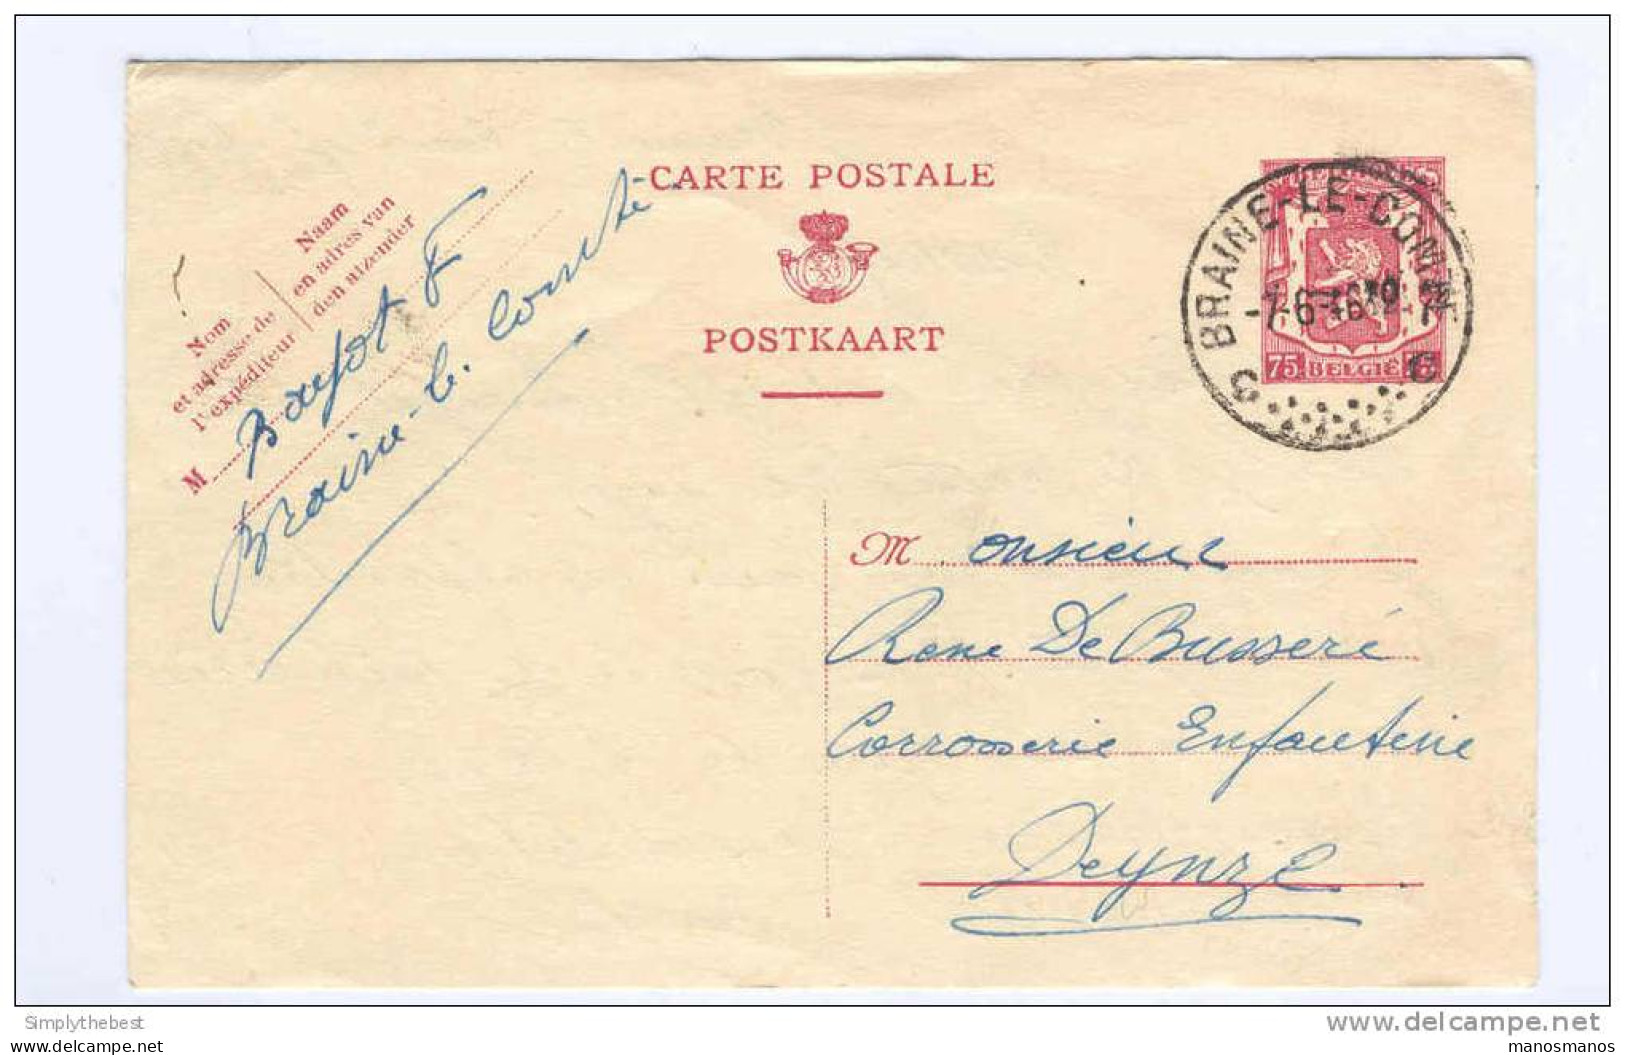 2 X Entier Postal 65 Et 75 C Sceau De L'Etat 1946 - Cachet Privé Voitures D'Enfants Bayot  - GG499 - Tarjetas 1934-1951